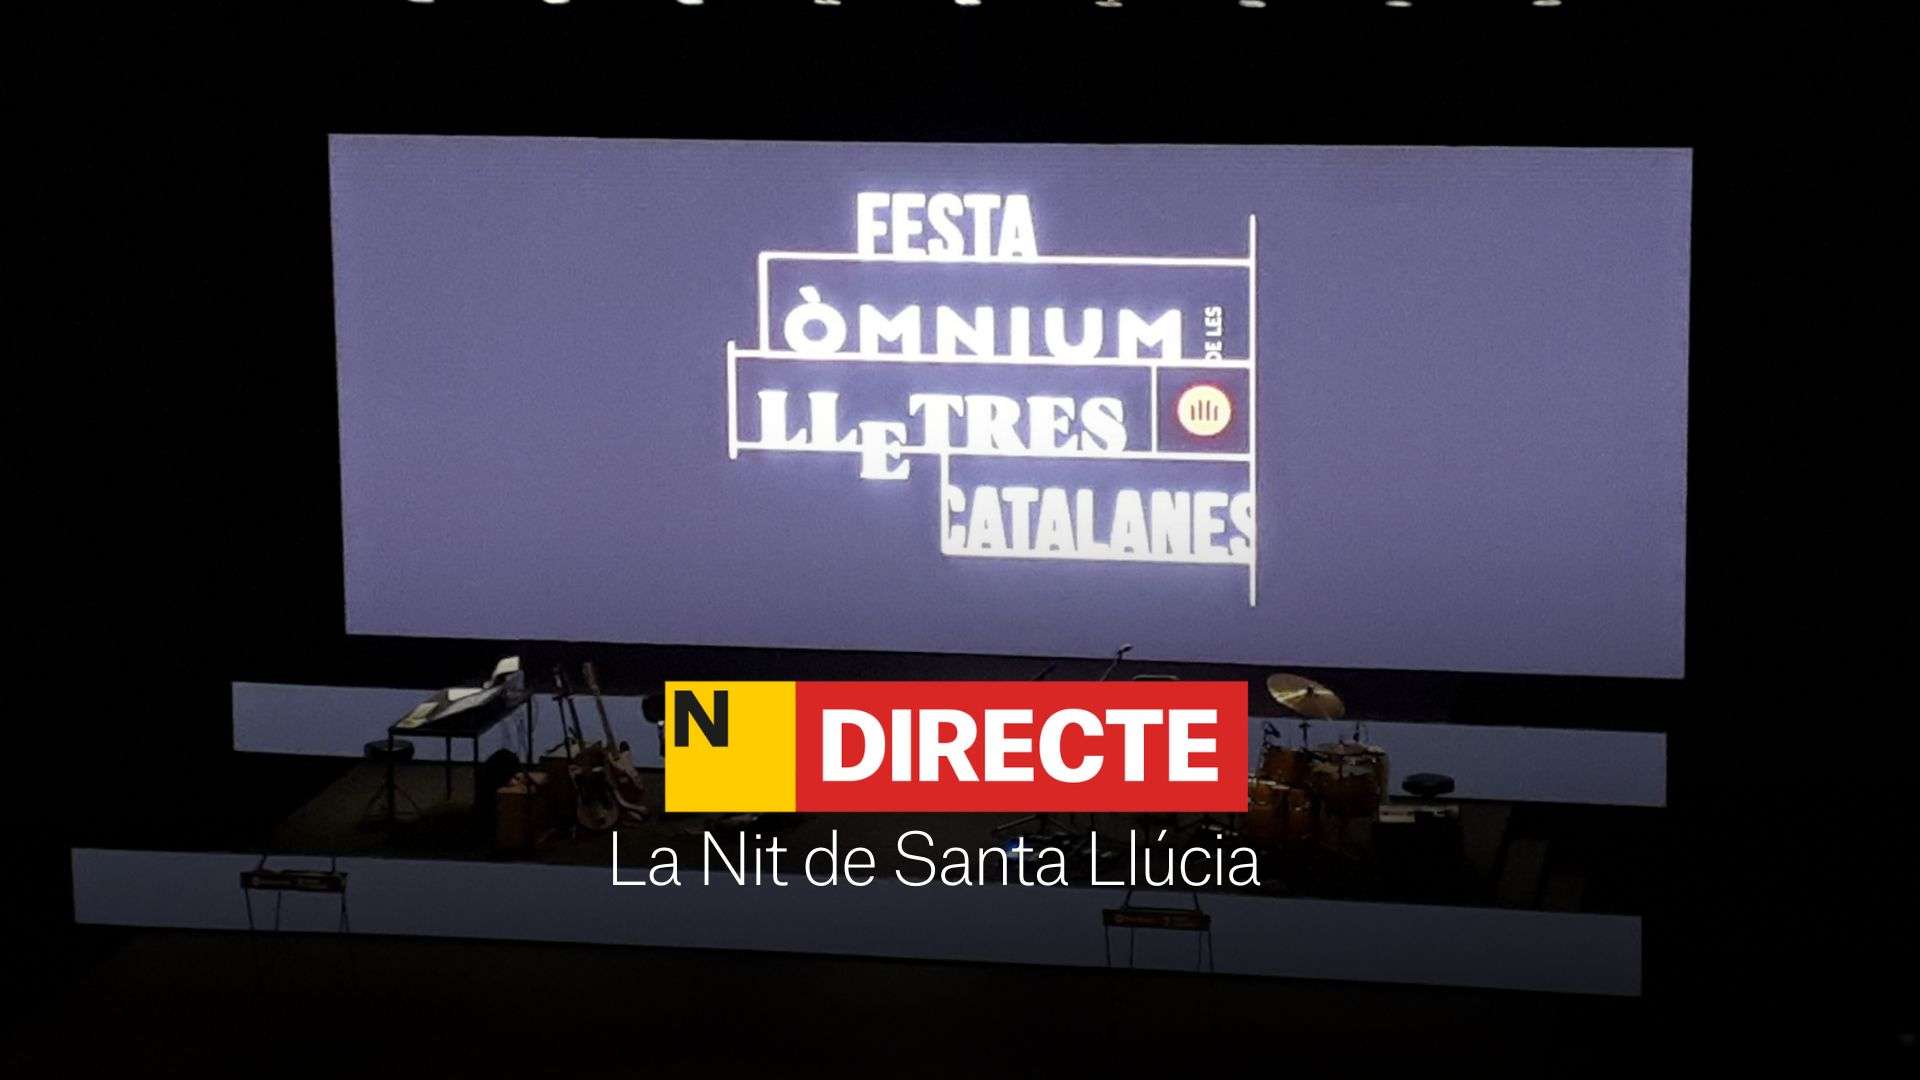 La Nit de Santa Llúcia d'Òmnium, DIRECTE | Última hora de la Festa de les Lletres Catalanes